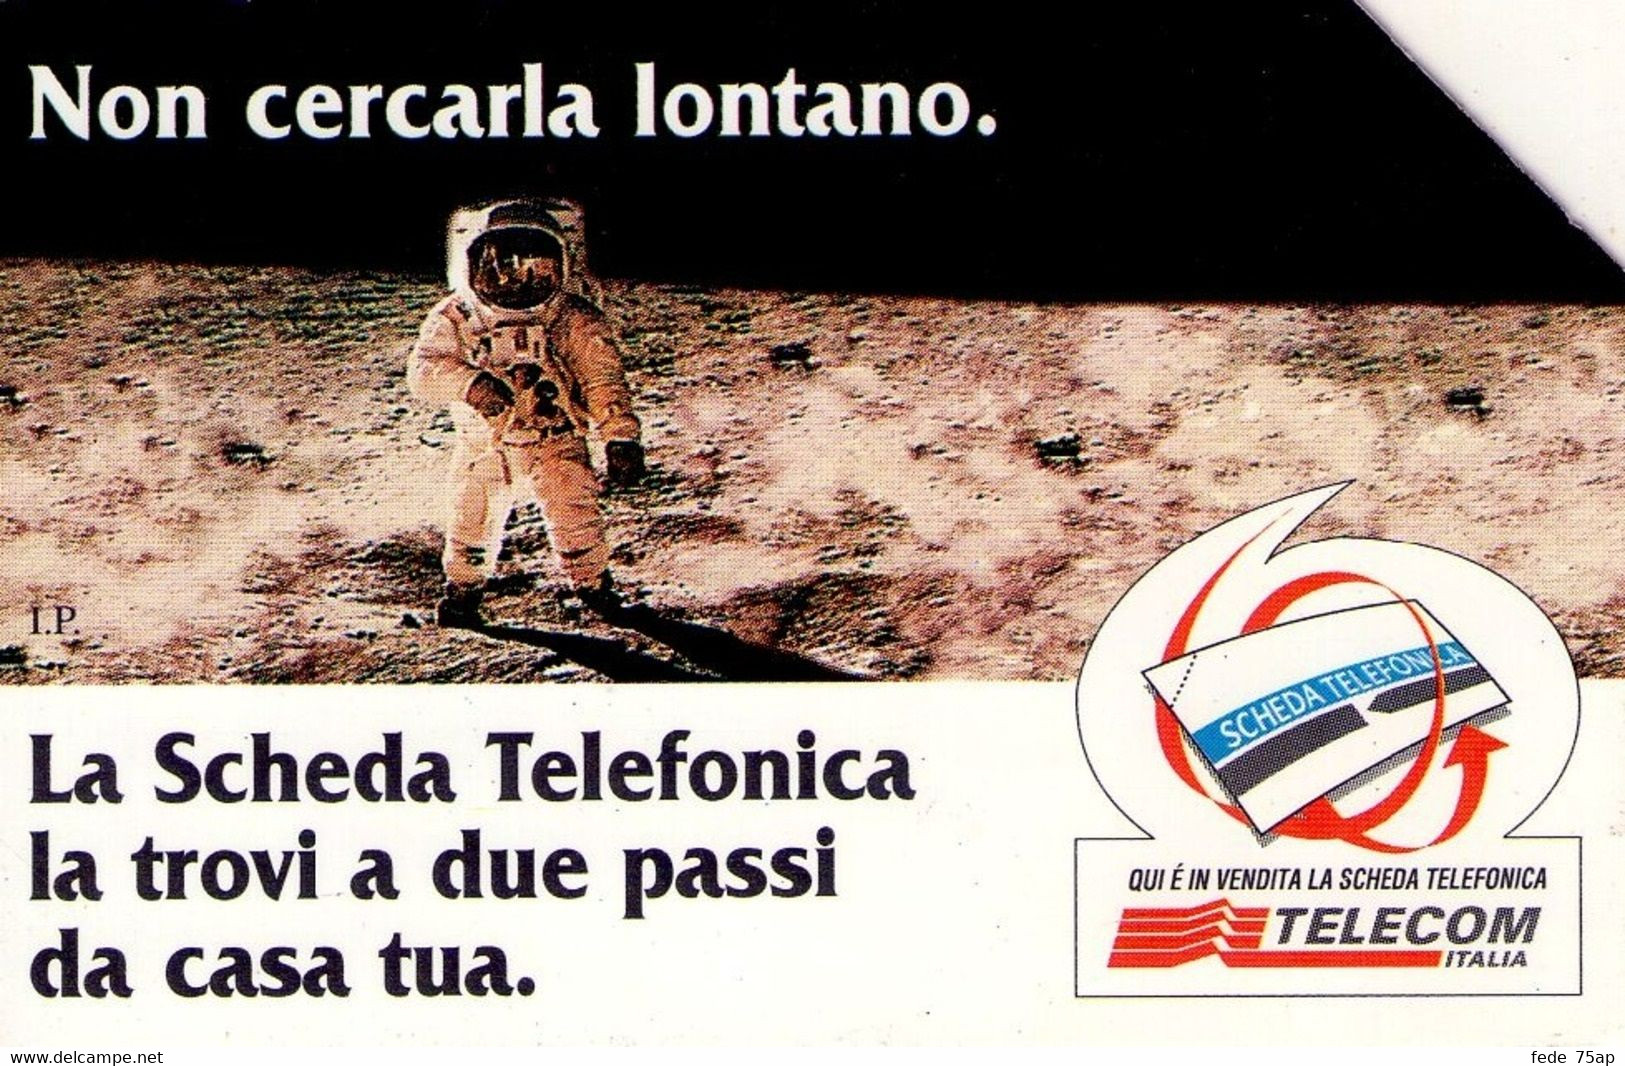 Scheda Telefonica TELECOM ITALIA "NON CERCARLA LONTANO - LUNA" - Catalogo Golden Lira Nr. 592, Usata - SPAZIO - Espace